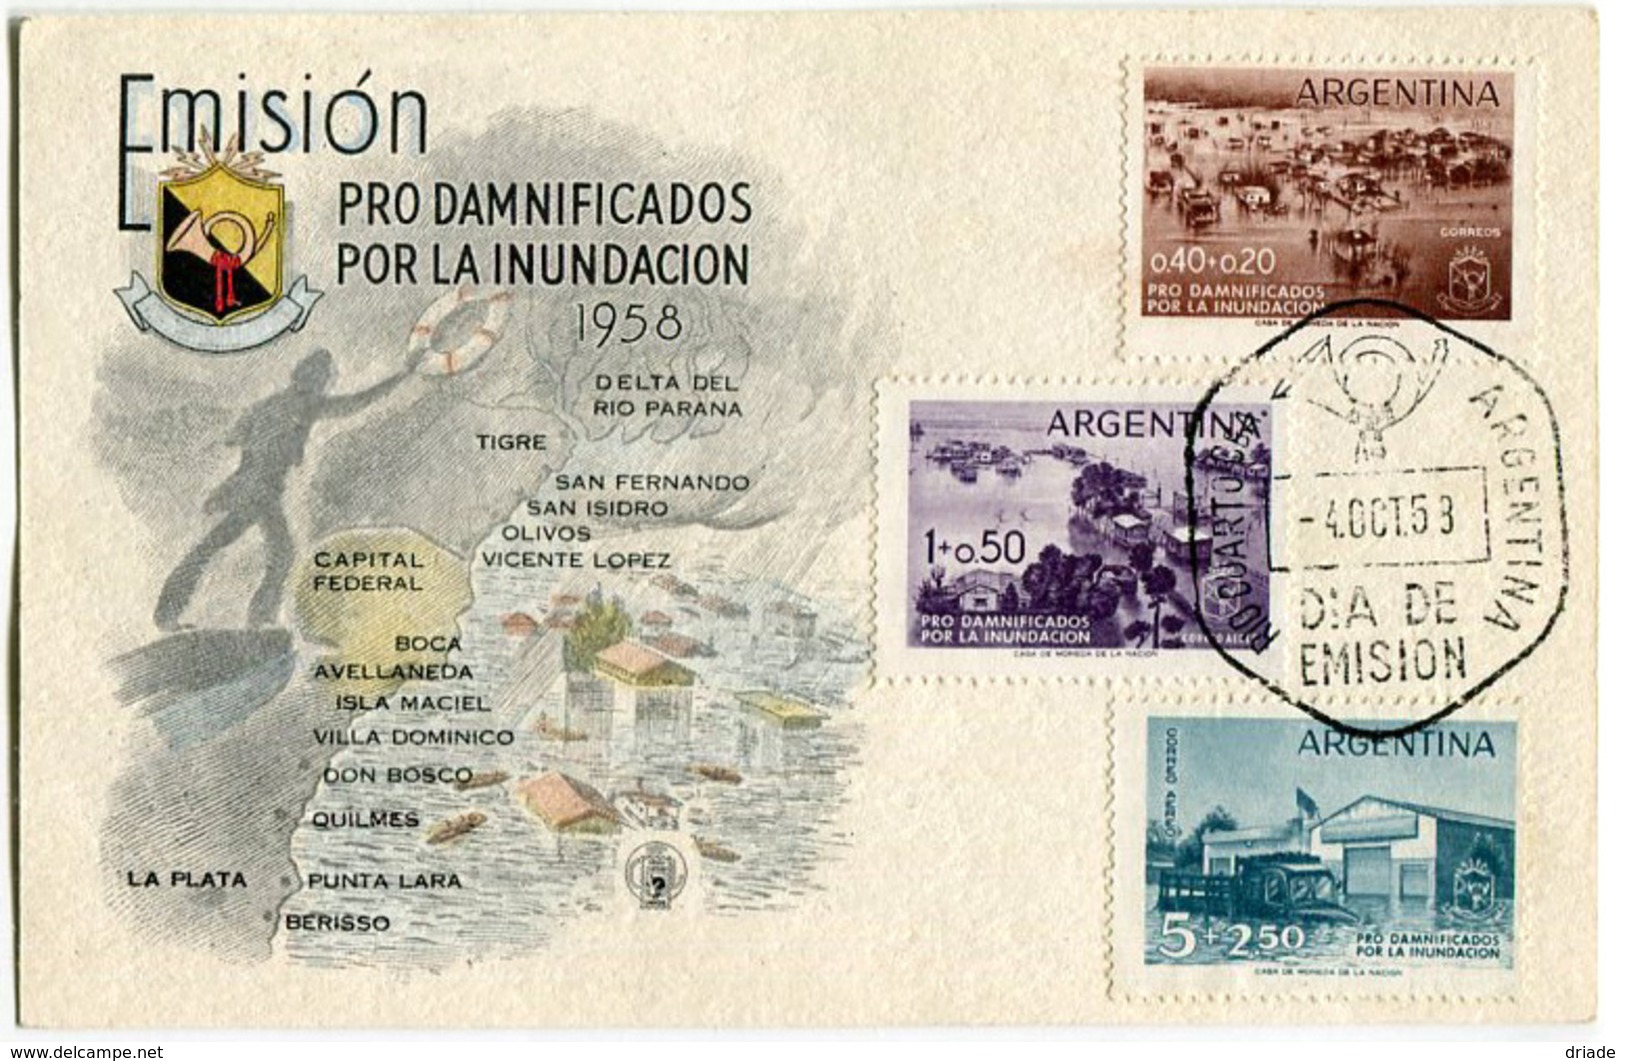 FDC EMISION PRO DAMNIFICADOS POR LA INUNDACION ANNO 1958  4/10/1958 DIA DE EMISION ARGENTINA - FDC